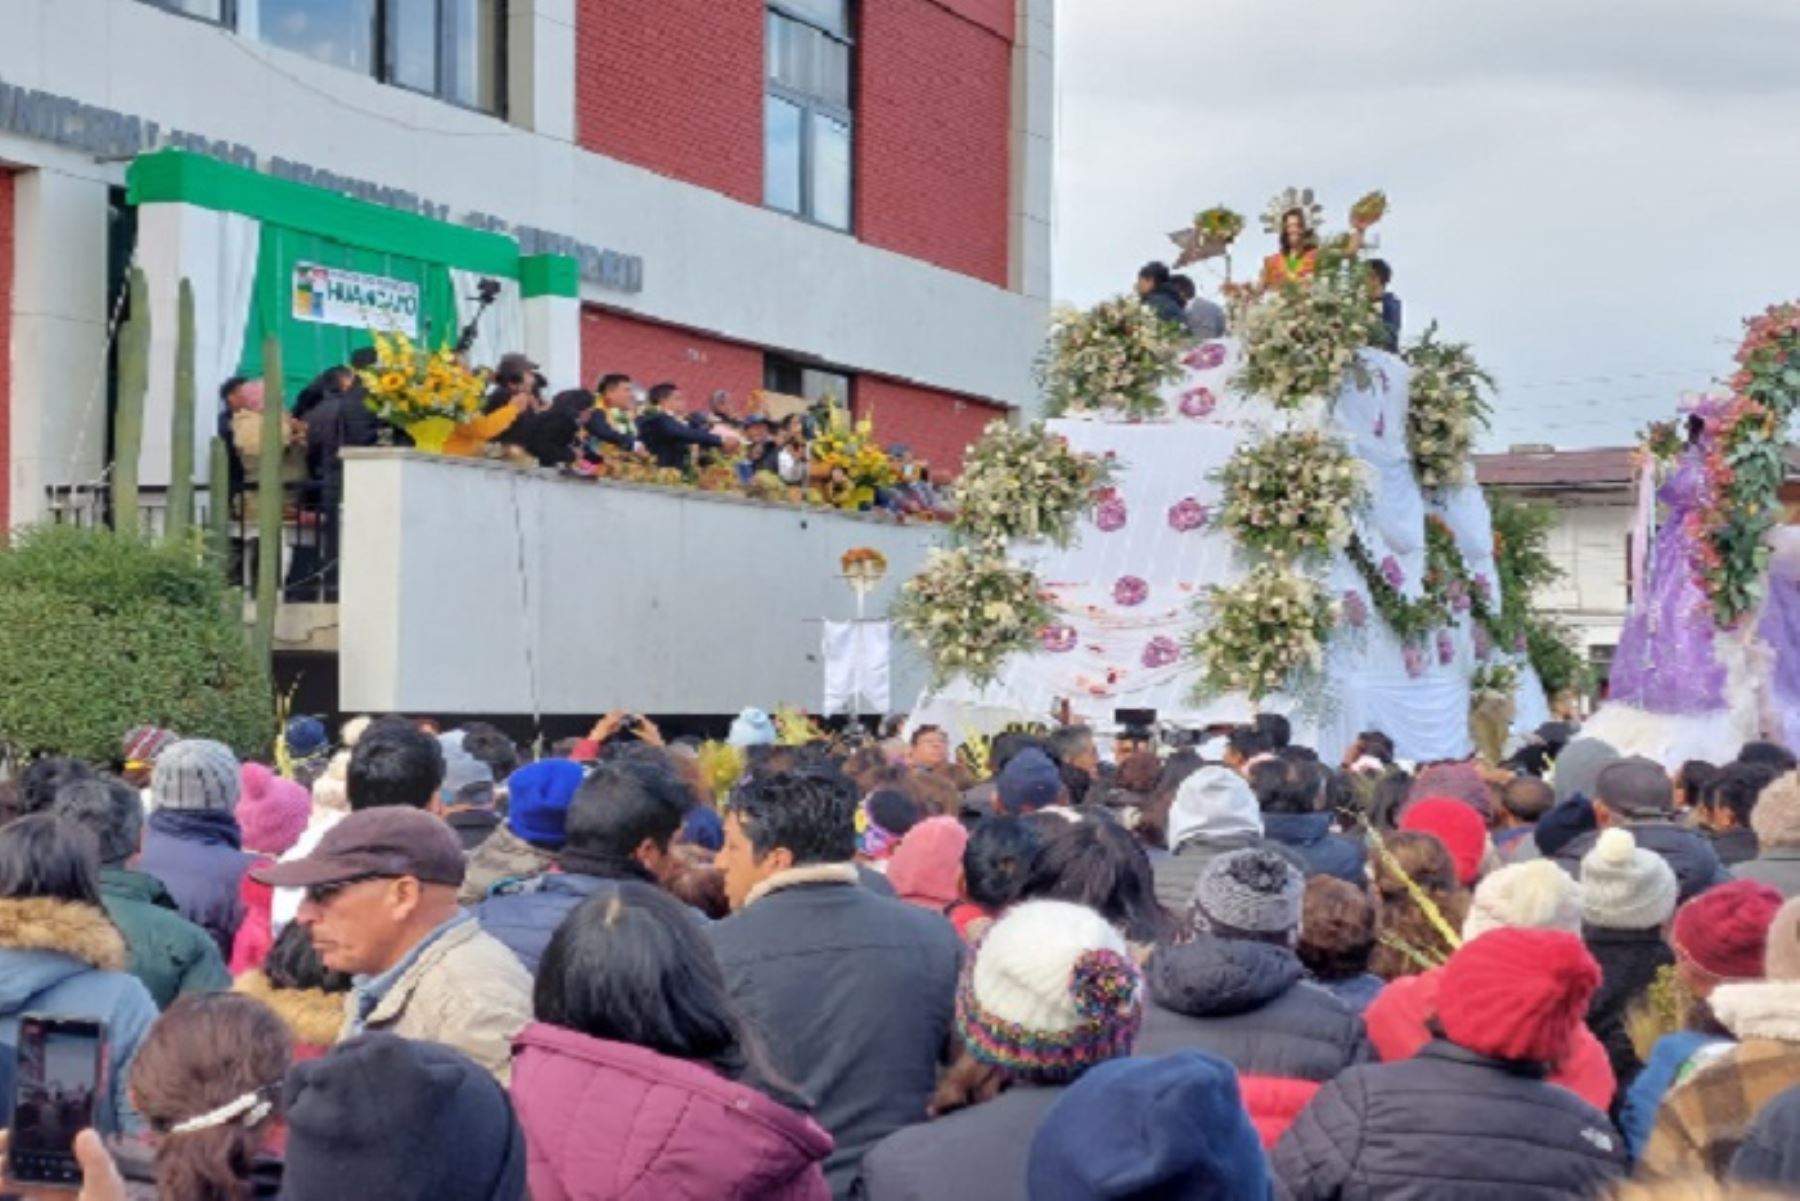 Al llegar al frontis de la municipalidad de Huancayo, el cristo resucitado fue vestido con el chaleco huanca y recibió la medalla de la ciudad,